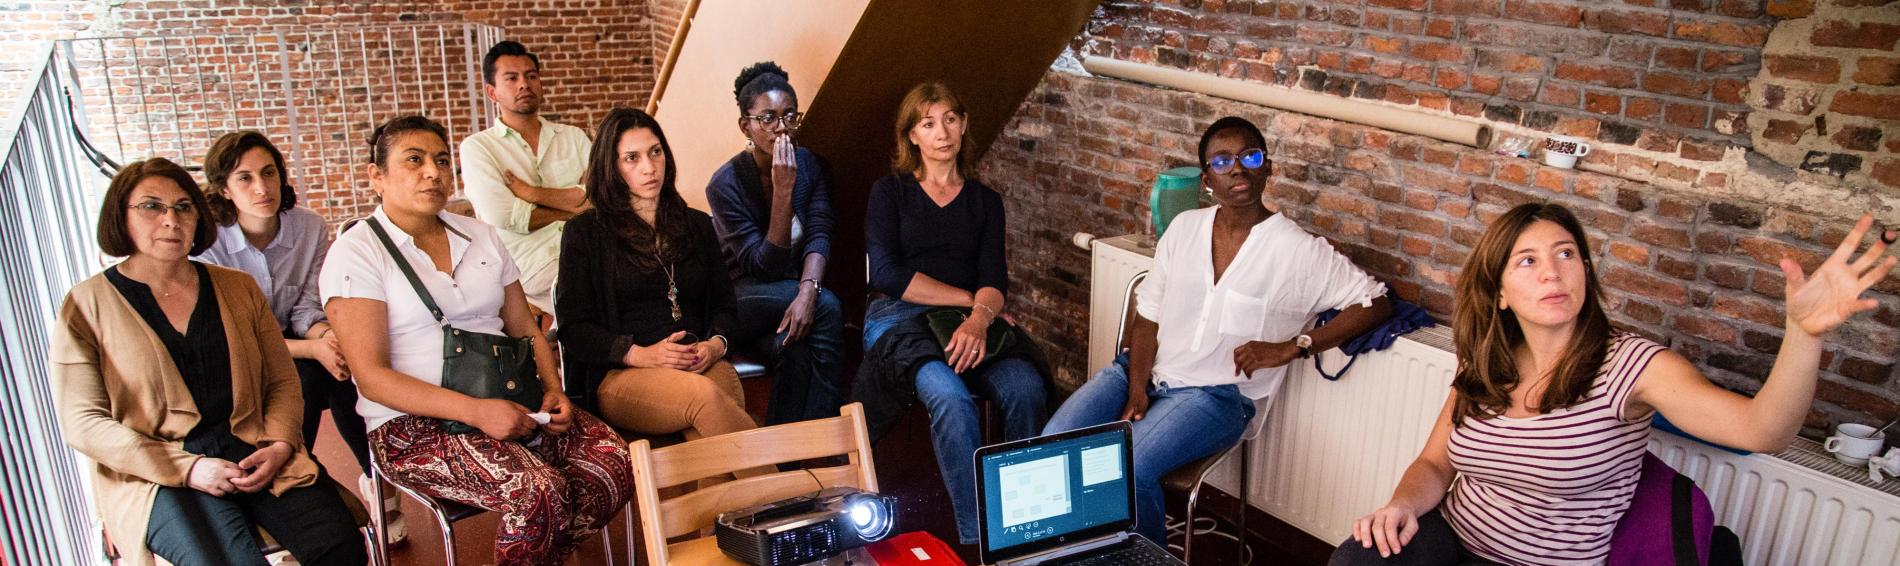 Een groep vrouwen van verschillende leeftijd en achtergrond zit op stoelen en kijkt naar een projectie. Op een stoel staat een laptop. 